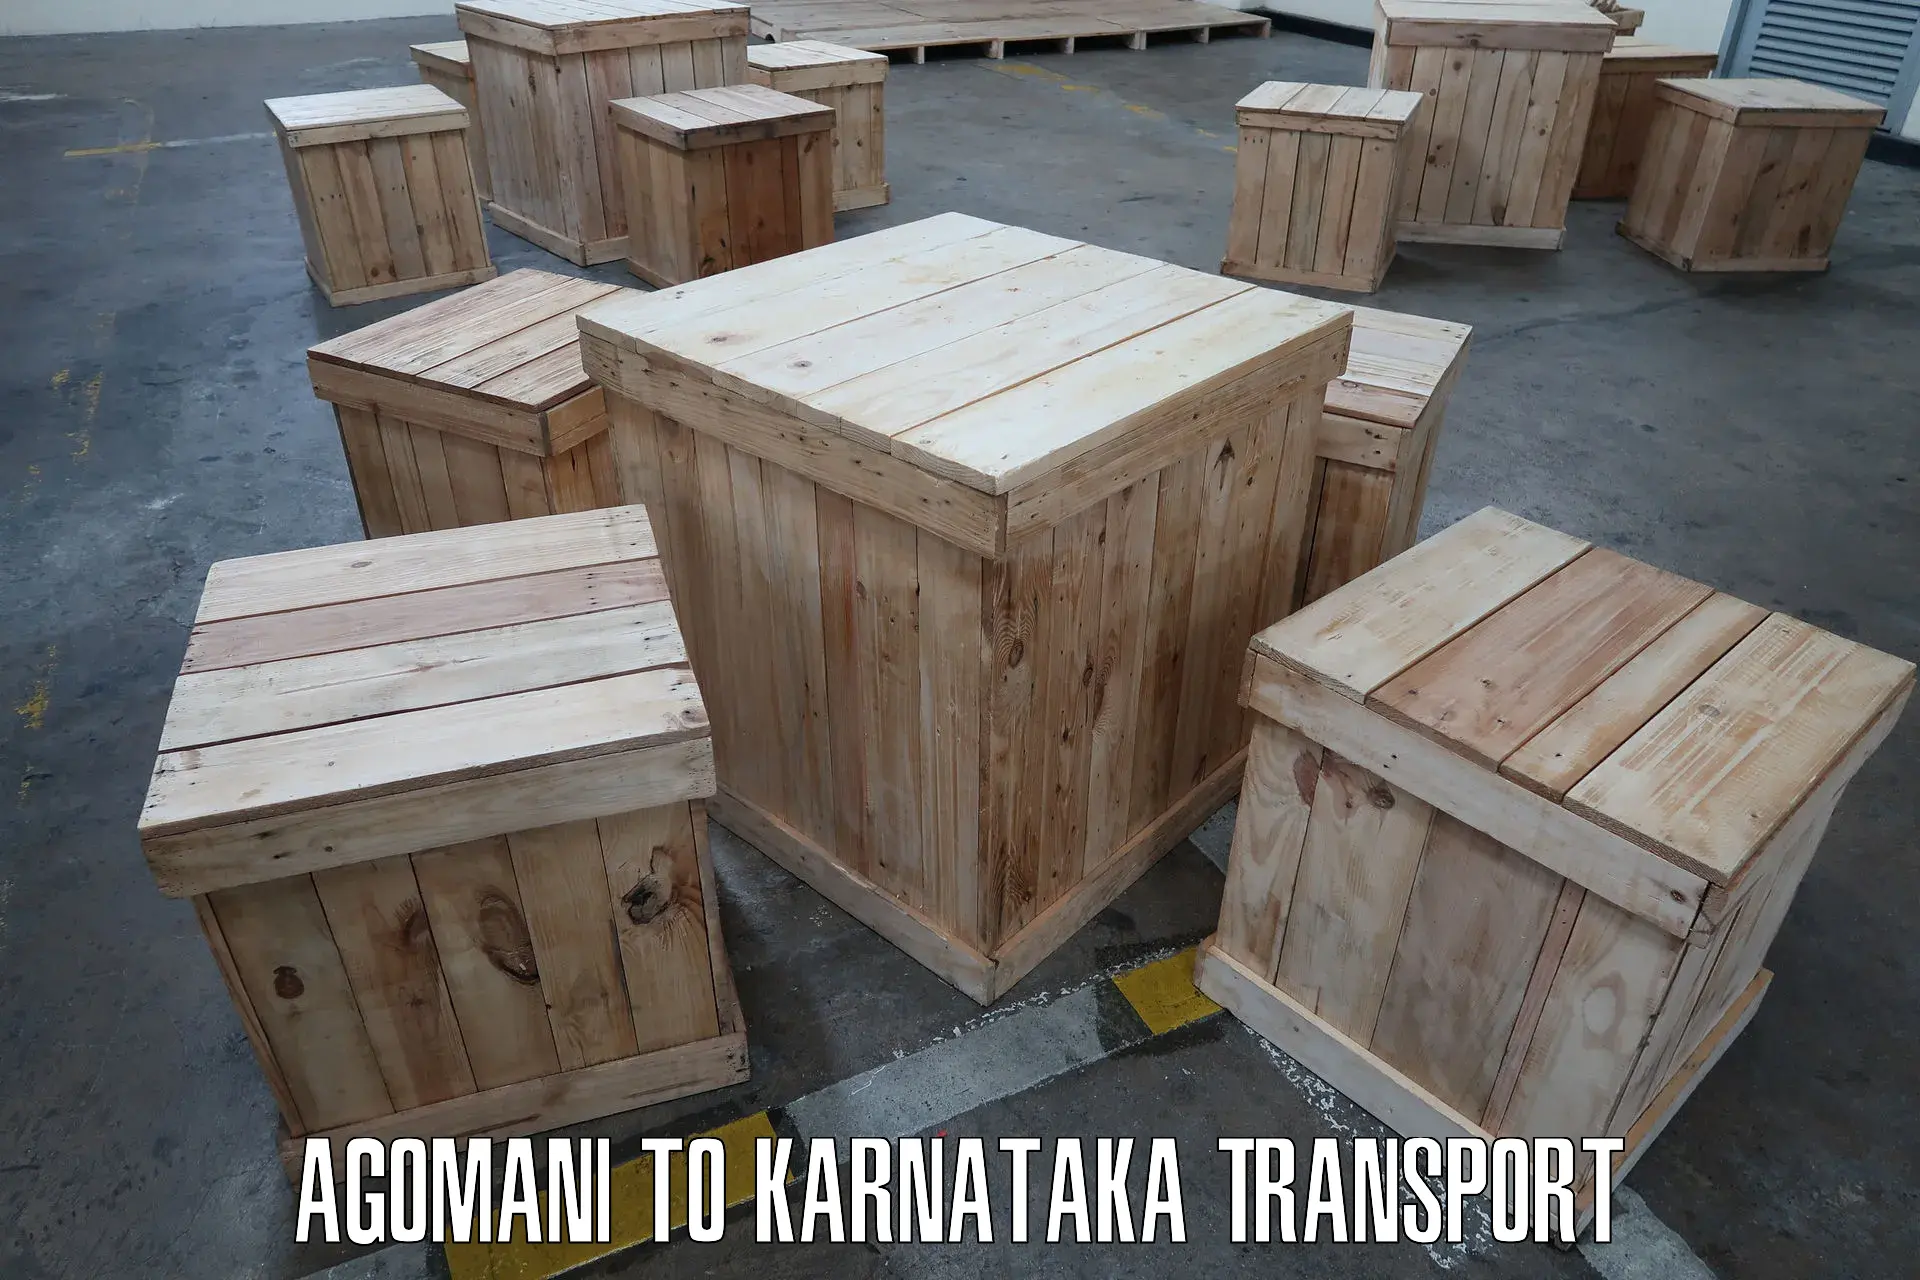 Transport in sharing Agomani to Kolar